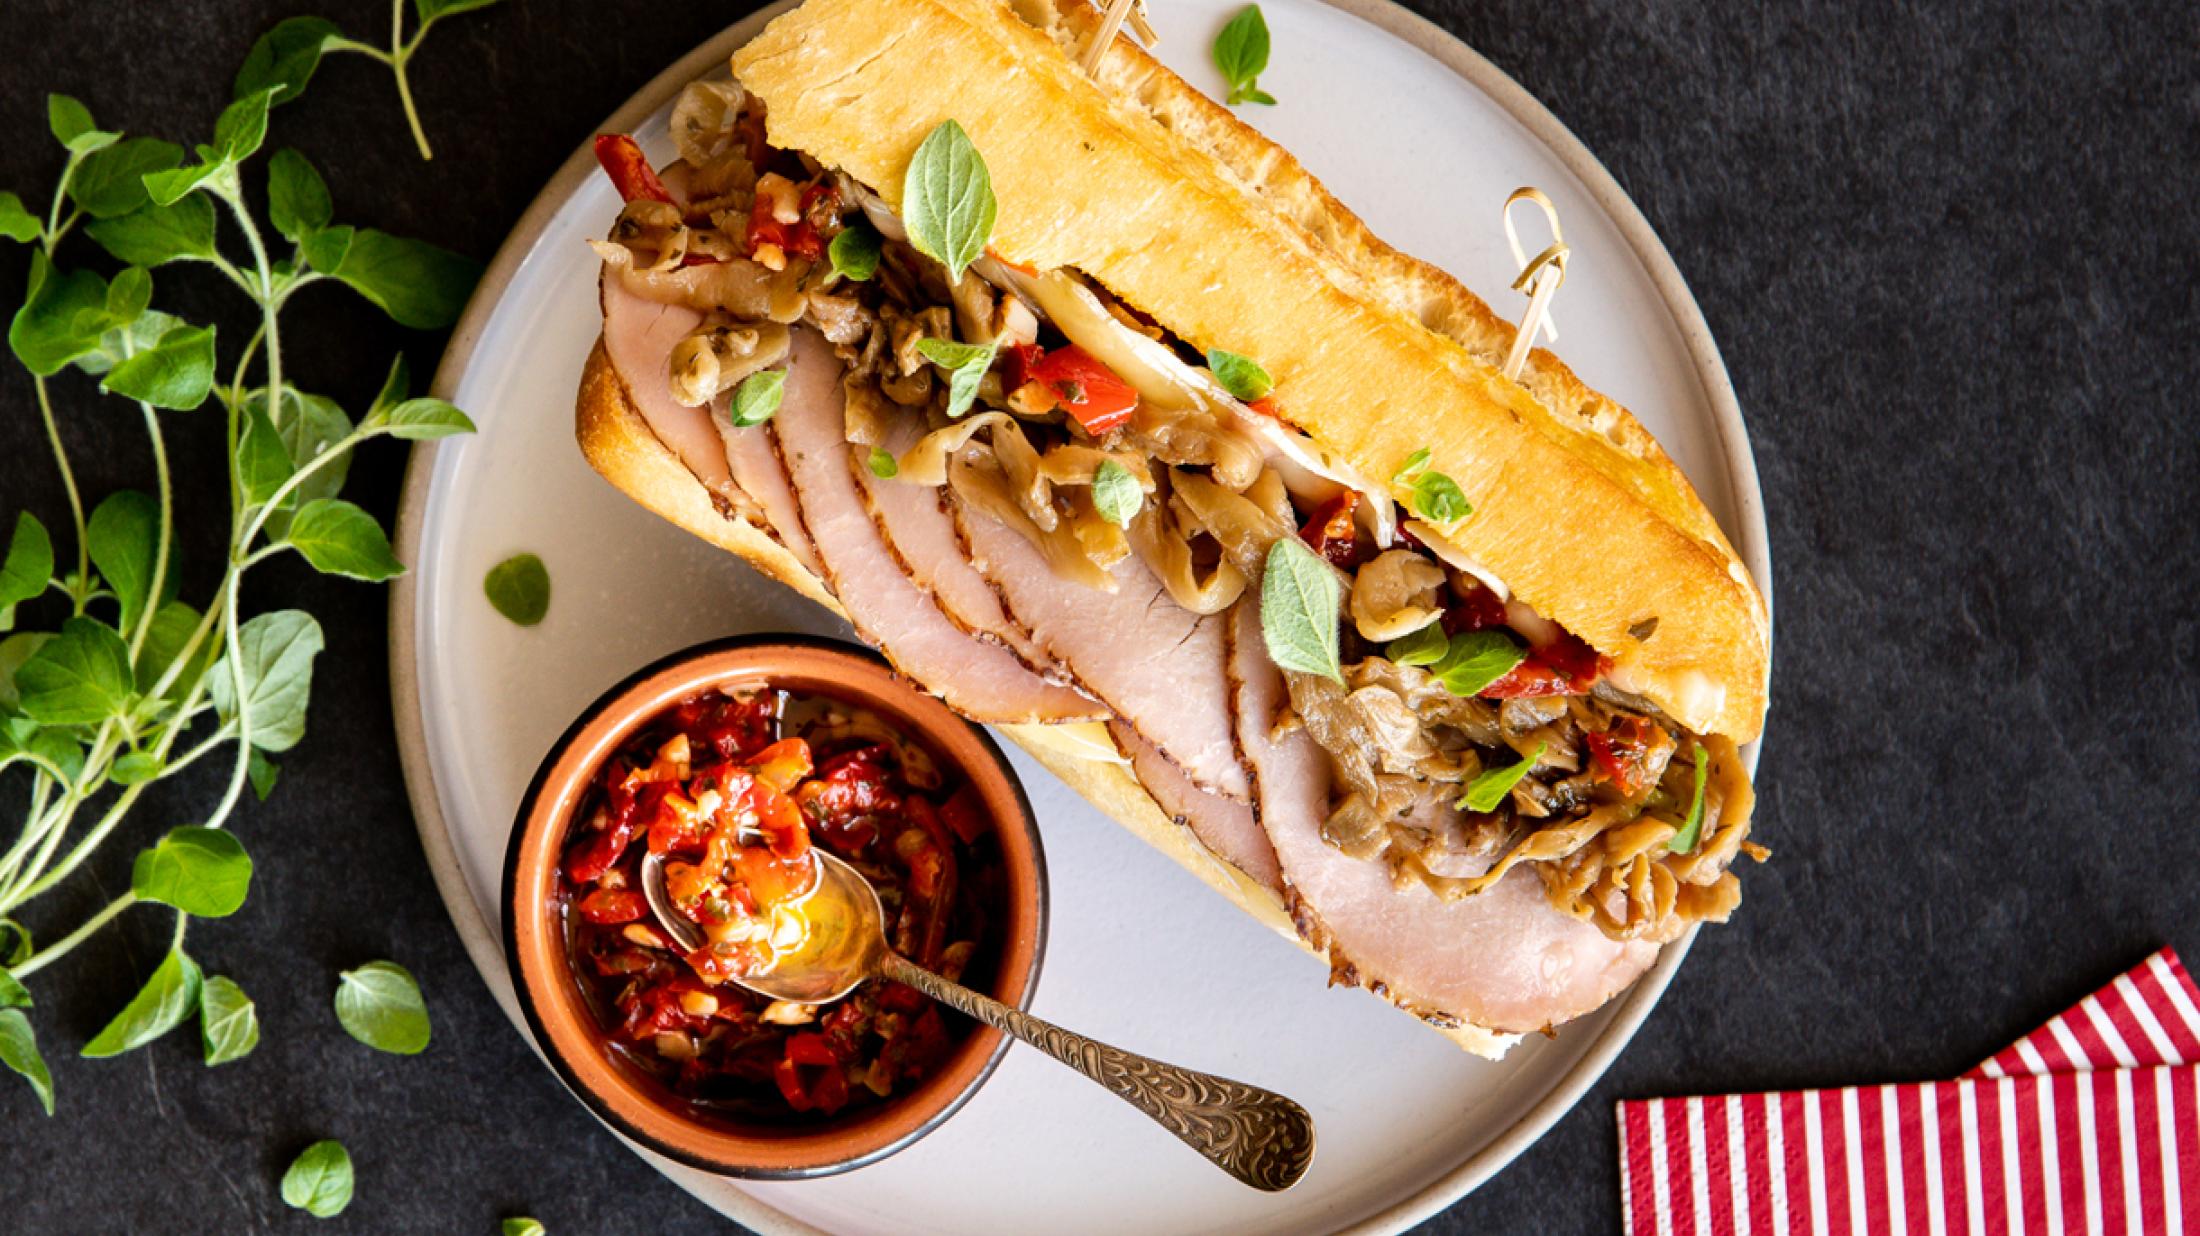 Italian porchetta sandwich